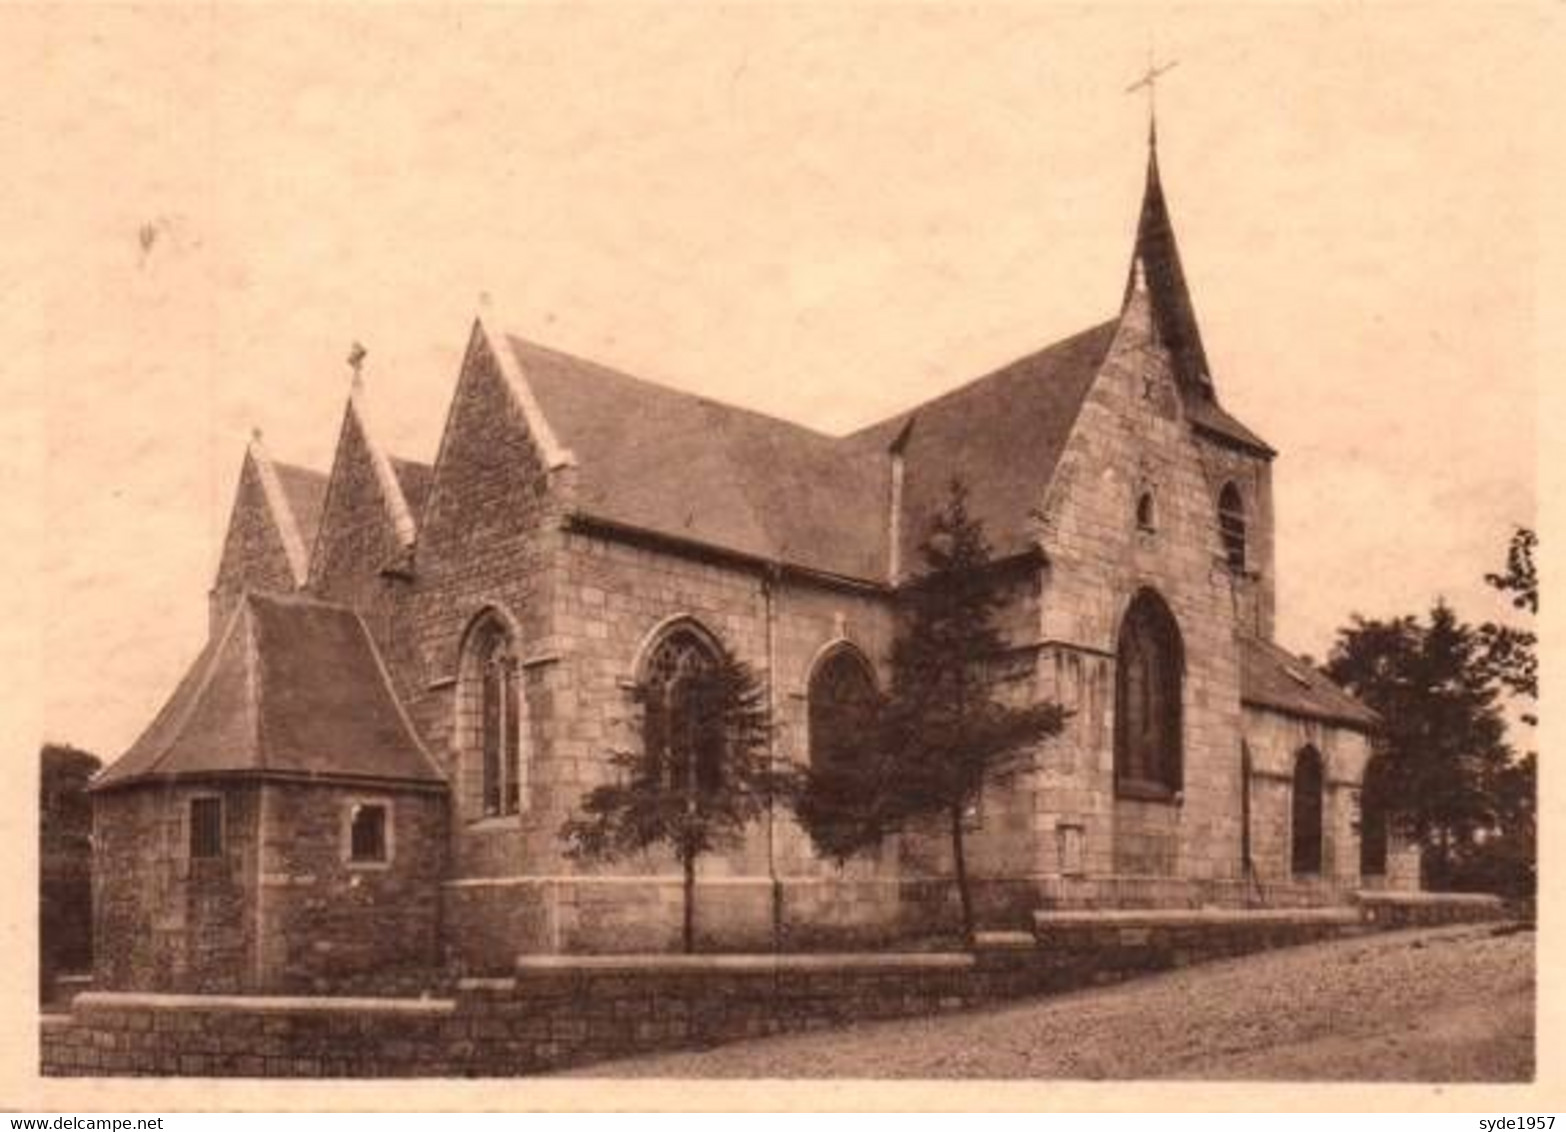 Montigny-le-Tilleul  8 cartes de l'Eglise Saint-Martin, éditée dans les années 1930.....